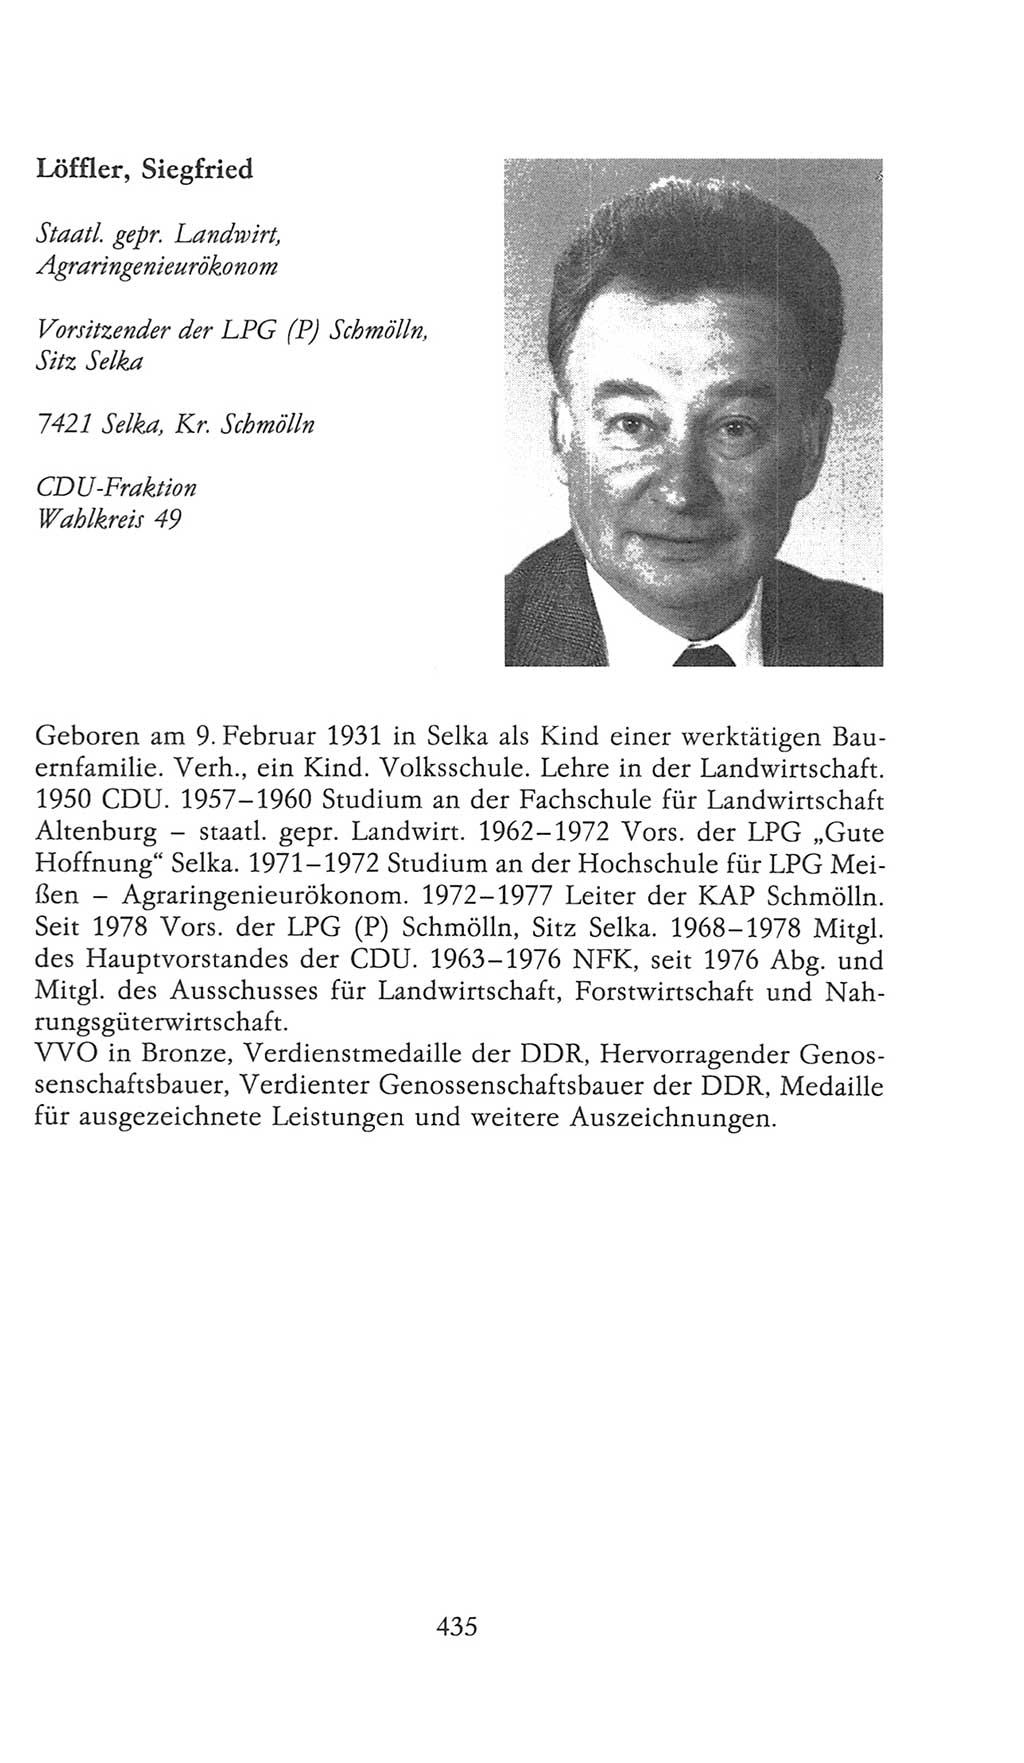 Volkskammer (VK) der Deutschen Demokratischen Republik (DDR), 9. Wahlperiode 1986-1990, Seite 435 (VK. DDR 9. WP. 1986-1990, S. 435)